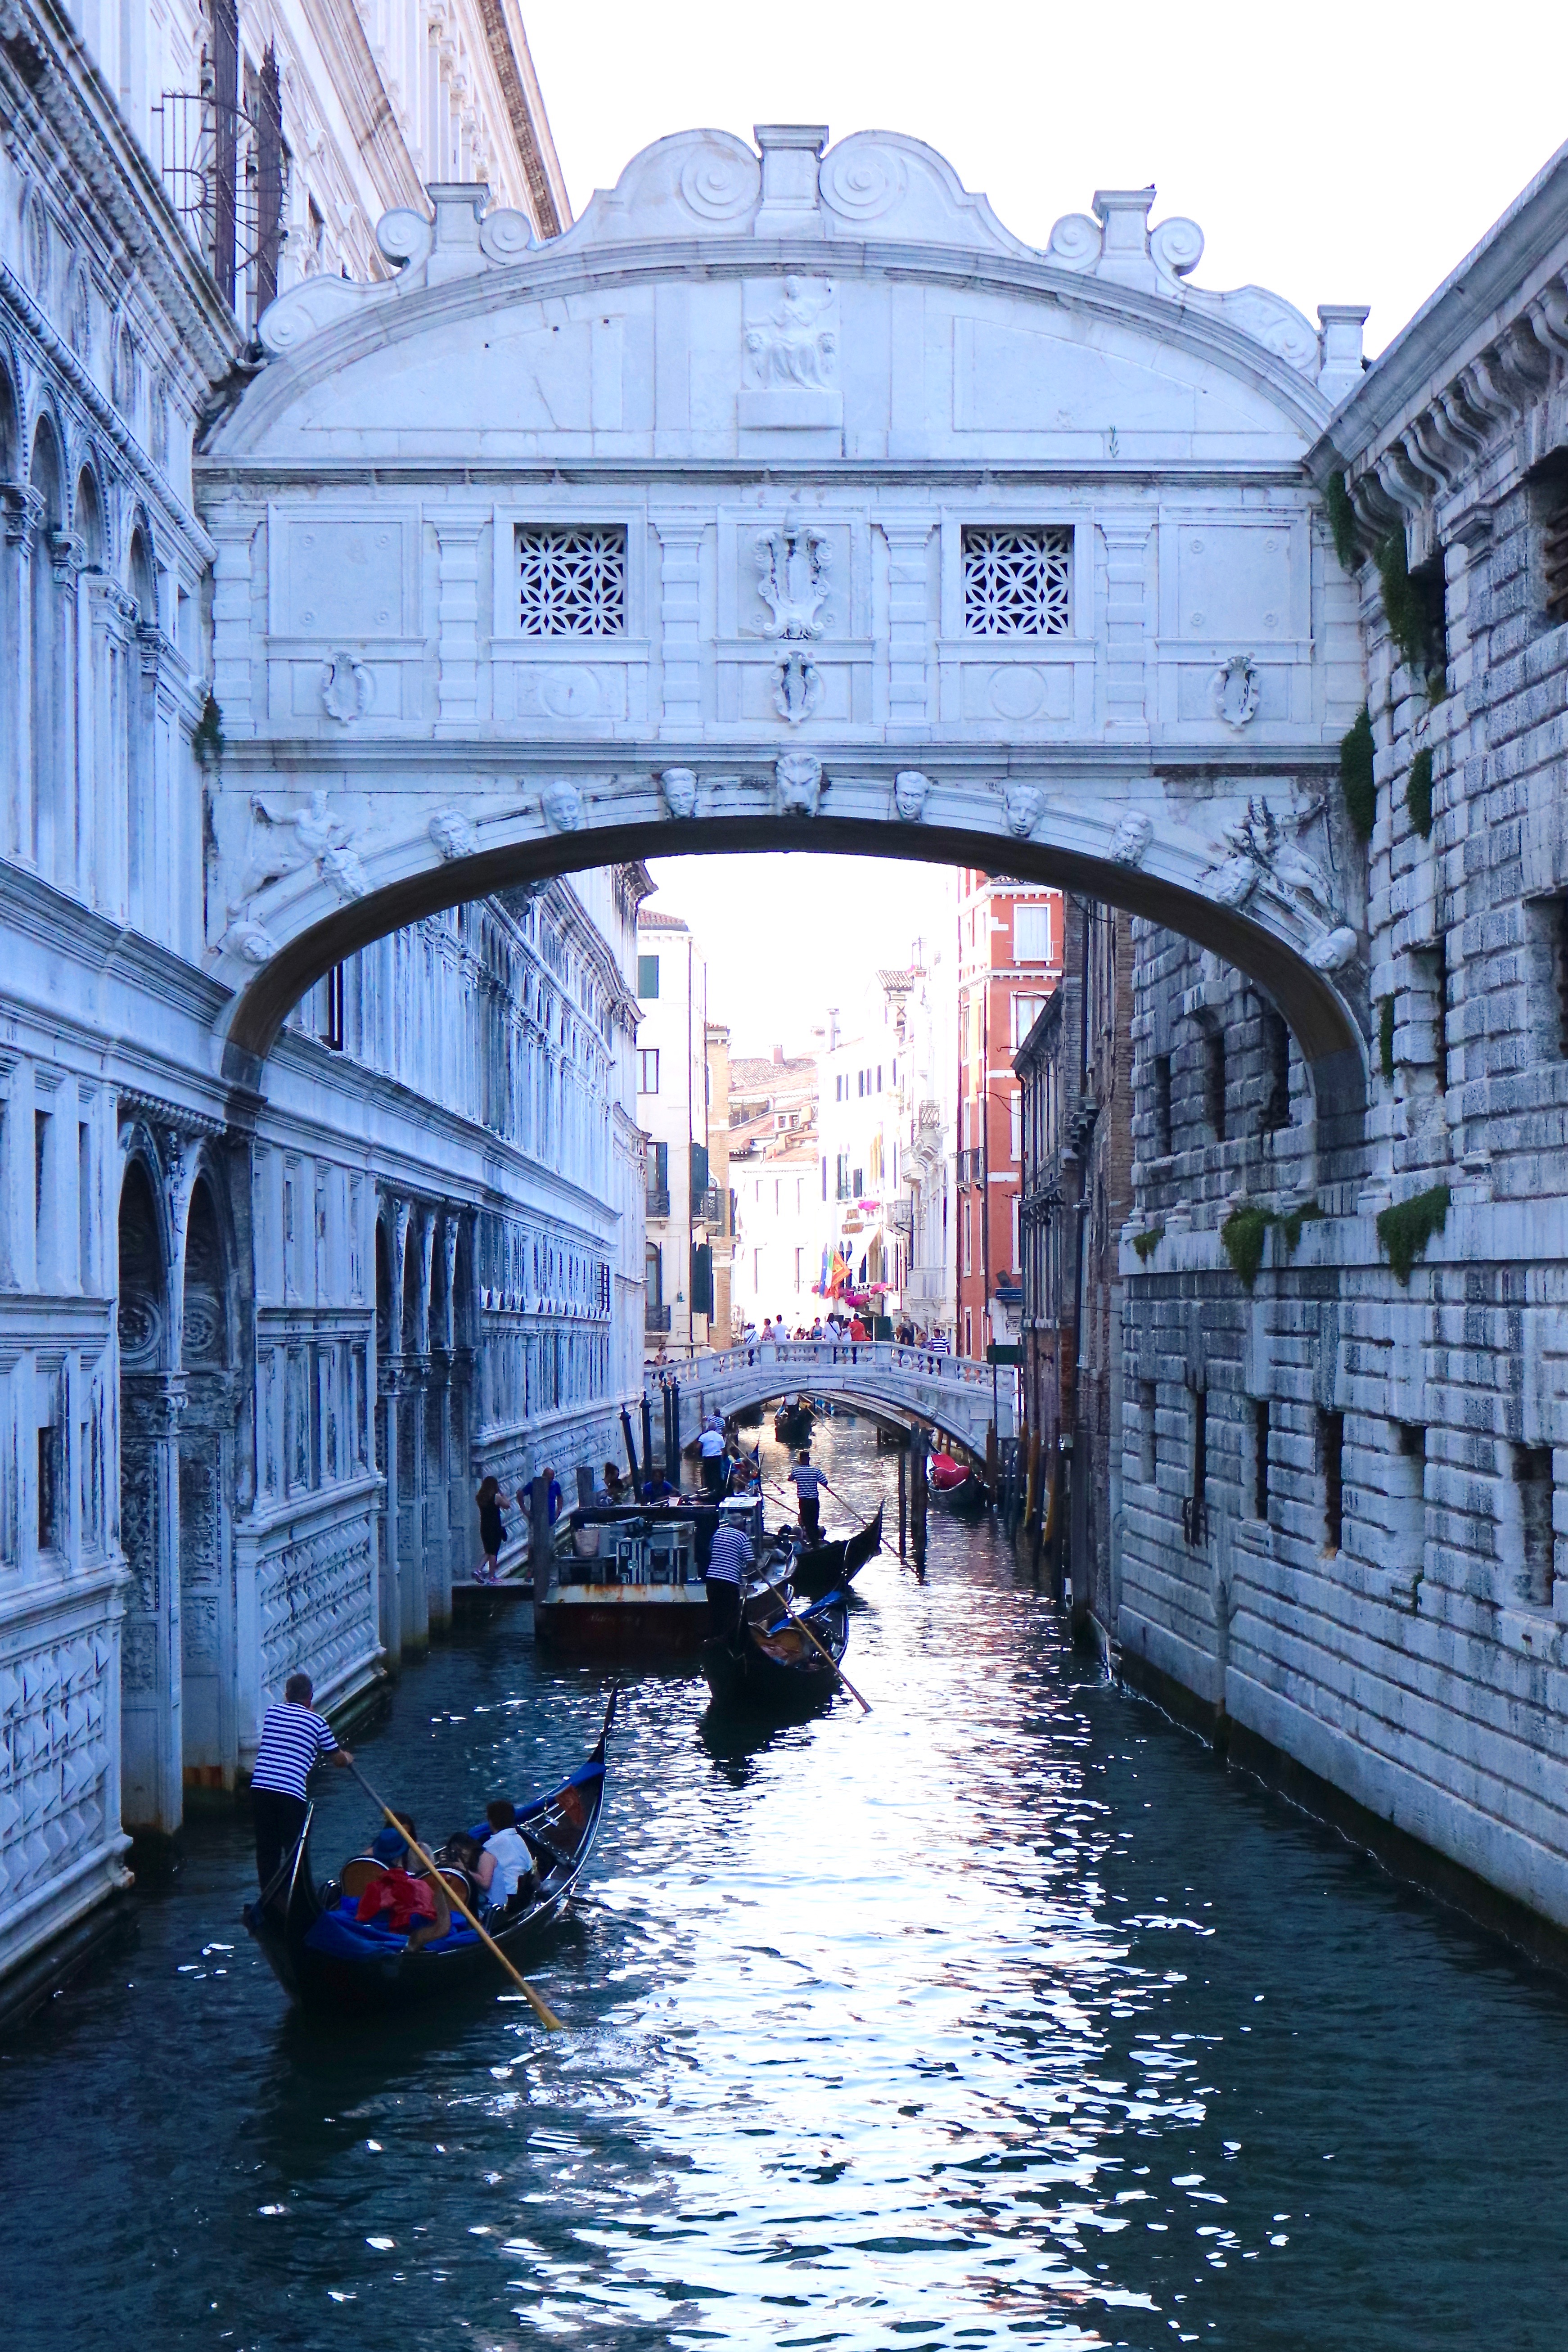 Venice Photo Diary 2016 | Bowtiful Life www.bowtifullife.com 8